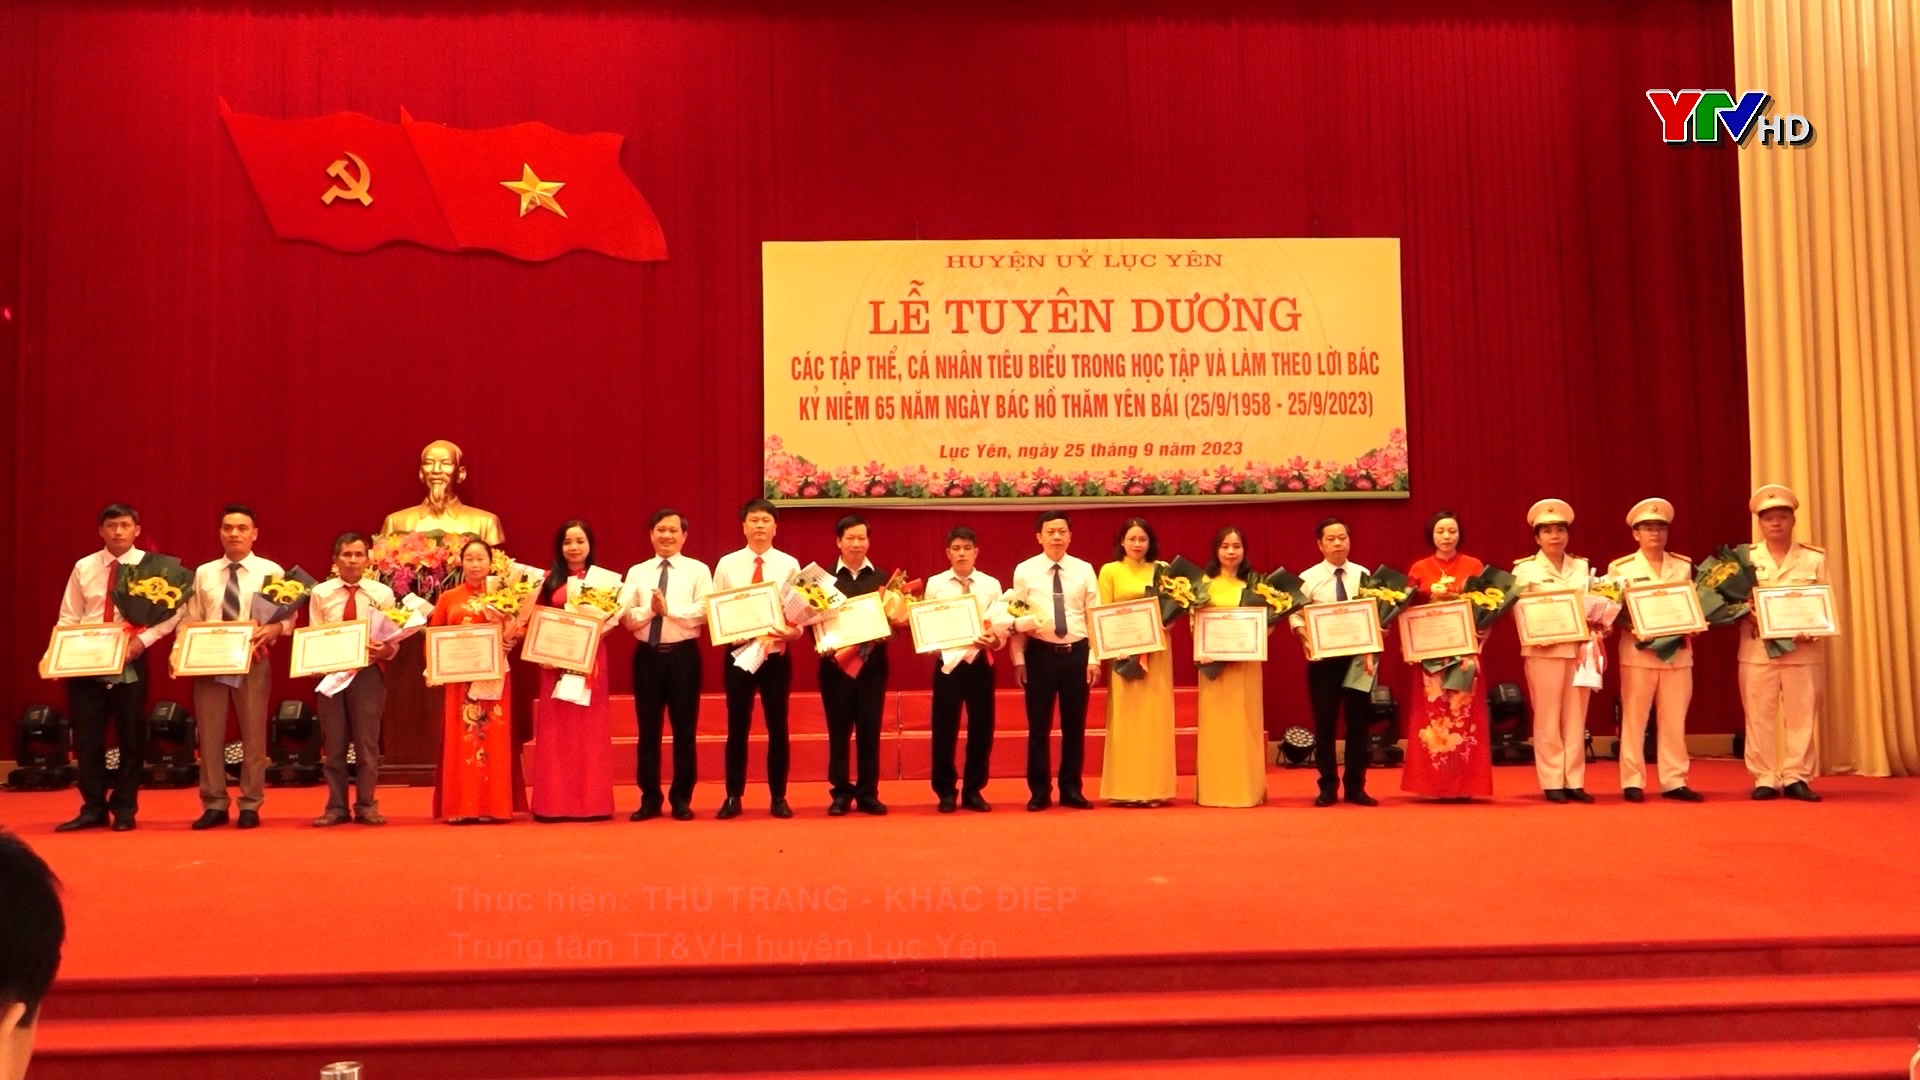 Huyện ủy Lục Yên tuyên dương 65 tập thể và cá nhân có thành tích tiêu biểu trong học tập và làm theo Bác